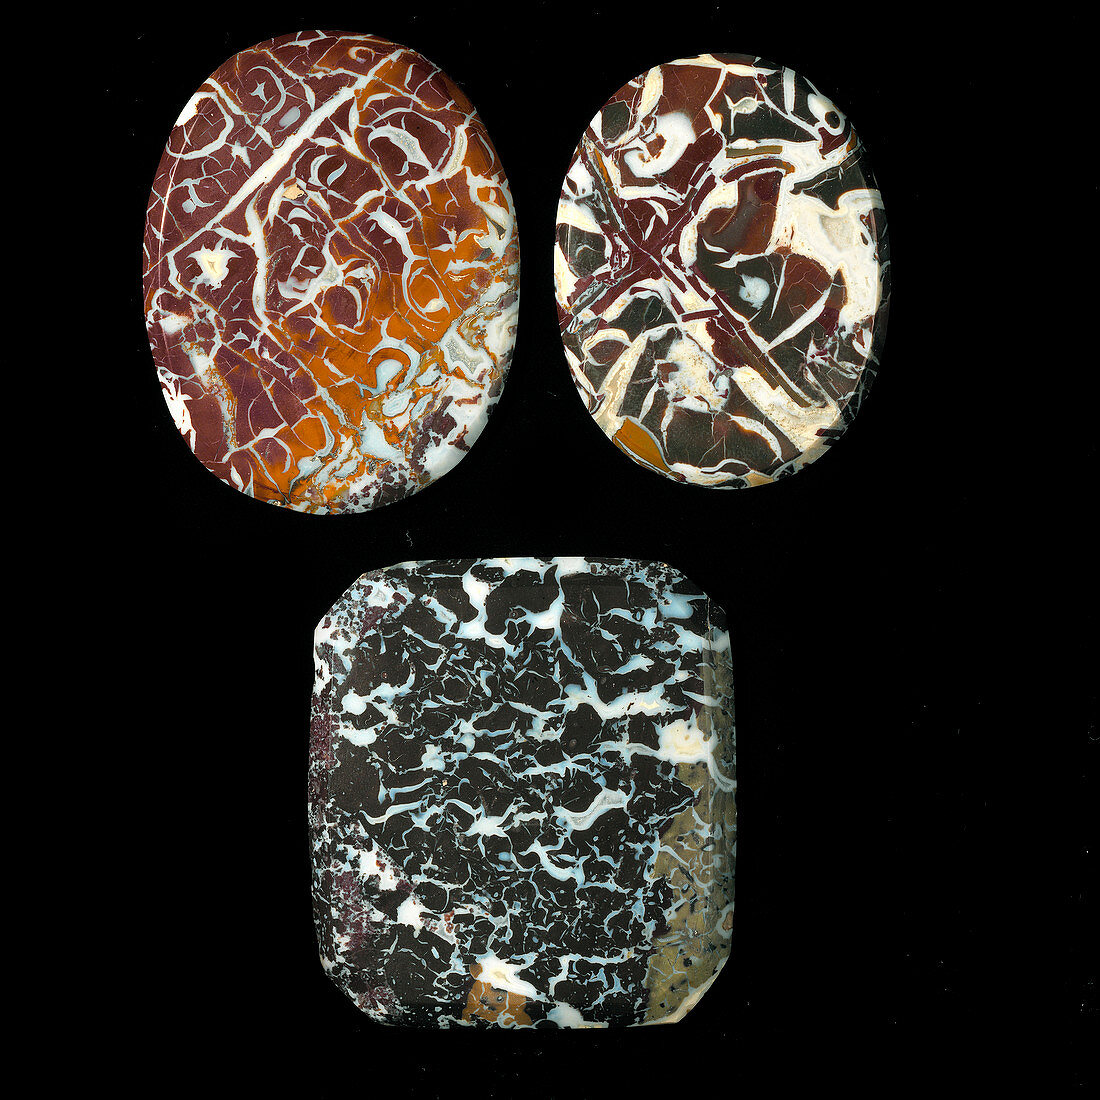 Cabuchon gemstones of jasper